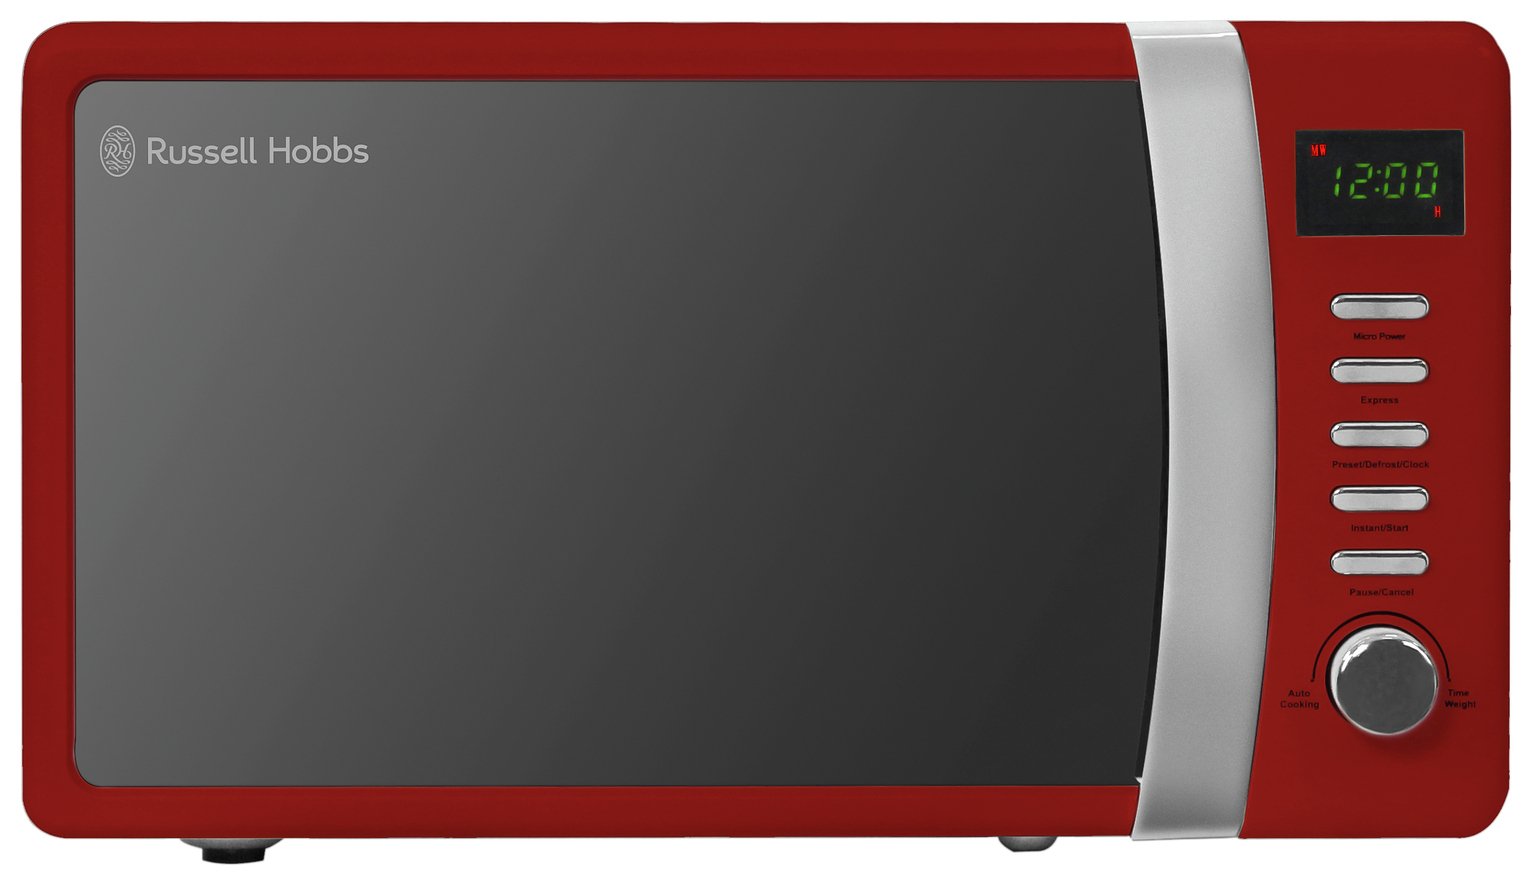 Russell Hobbs 700W Standard Microwave RHMD702R - Red